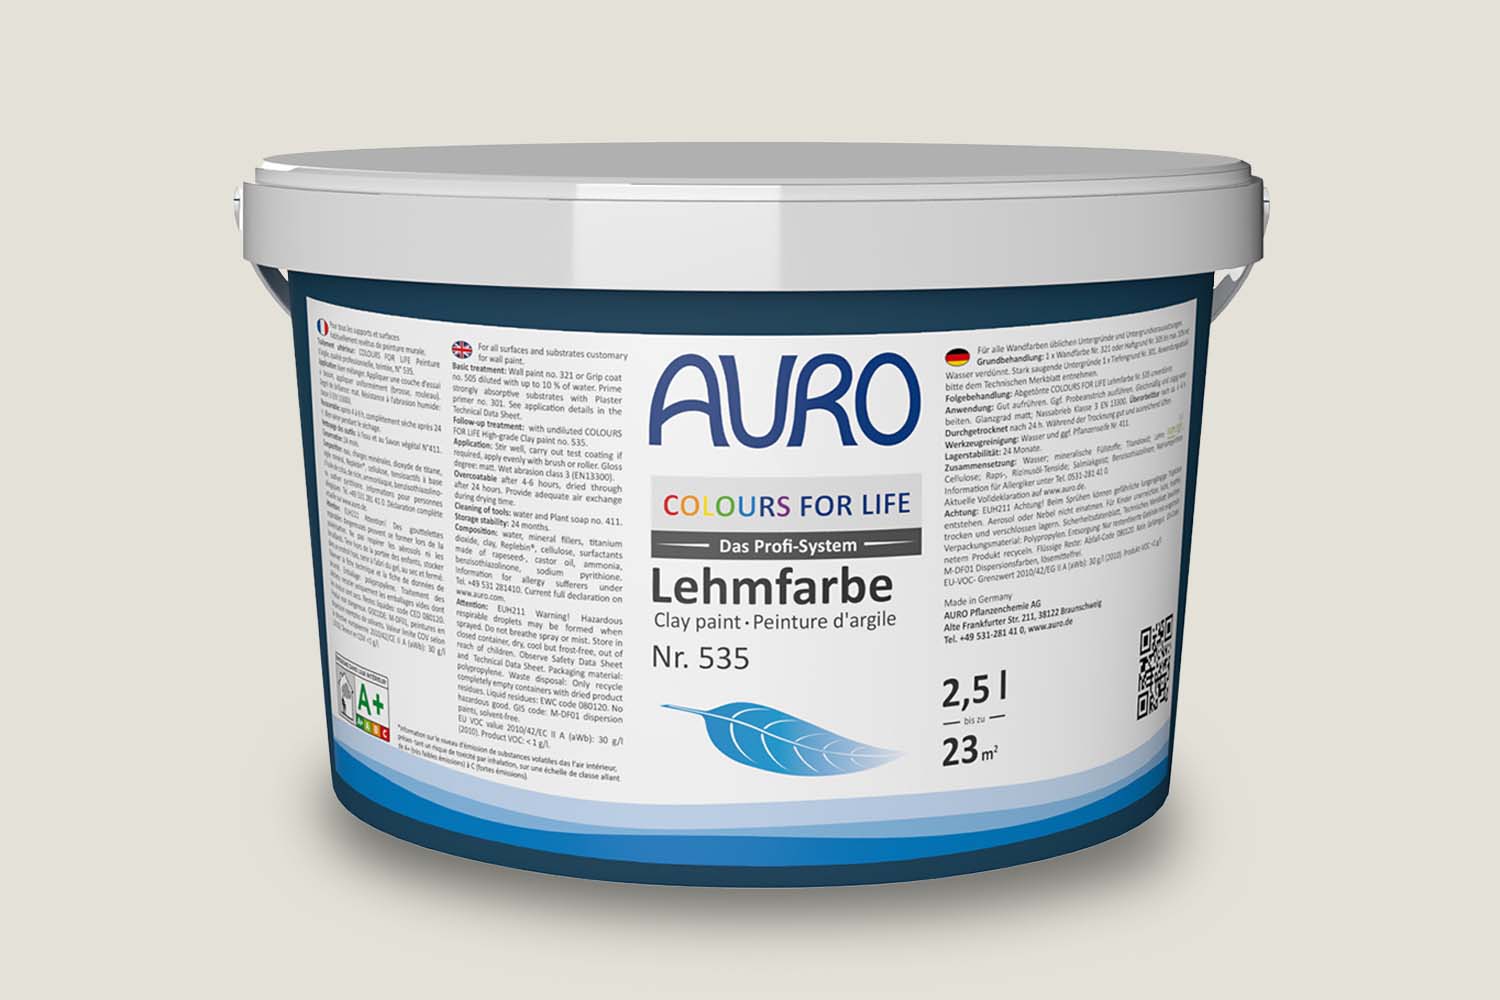 Auro Profi-Lehmfarbe Nr. 535 white flour Colours For Life